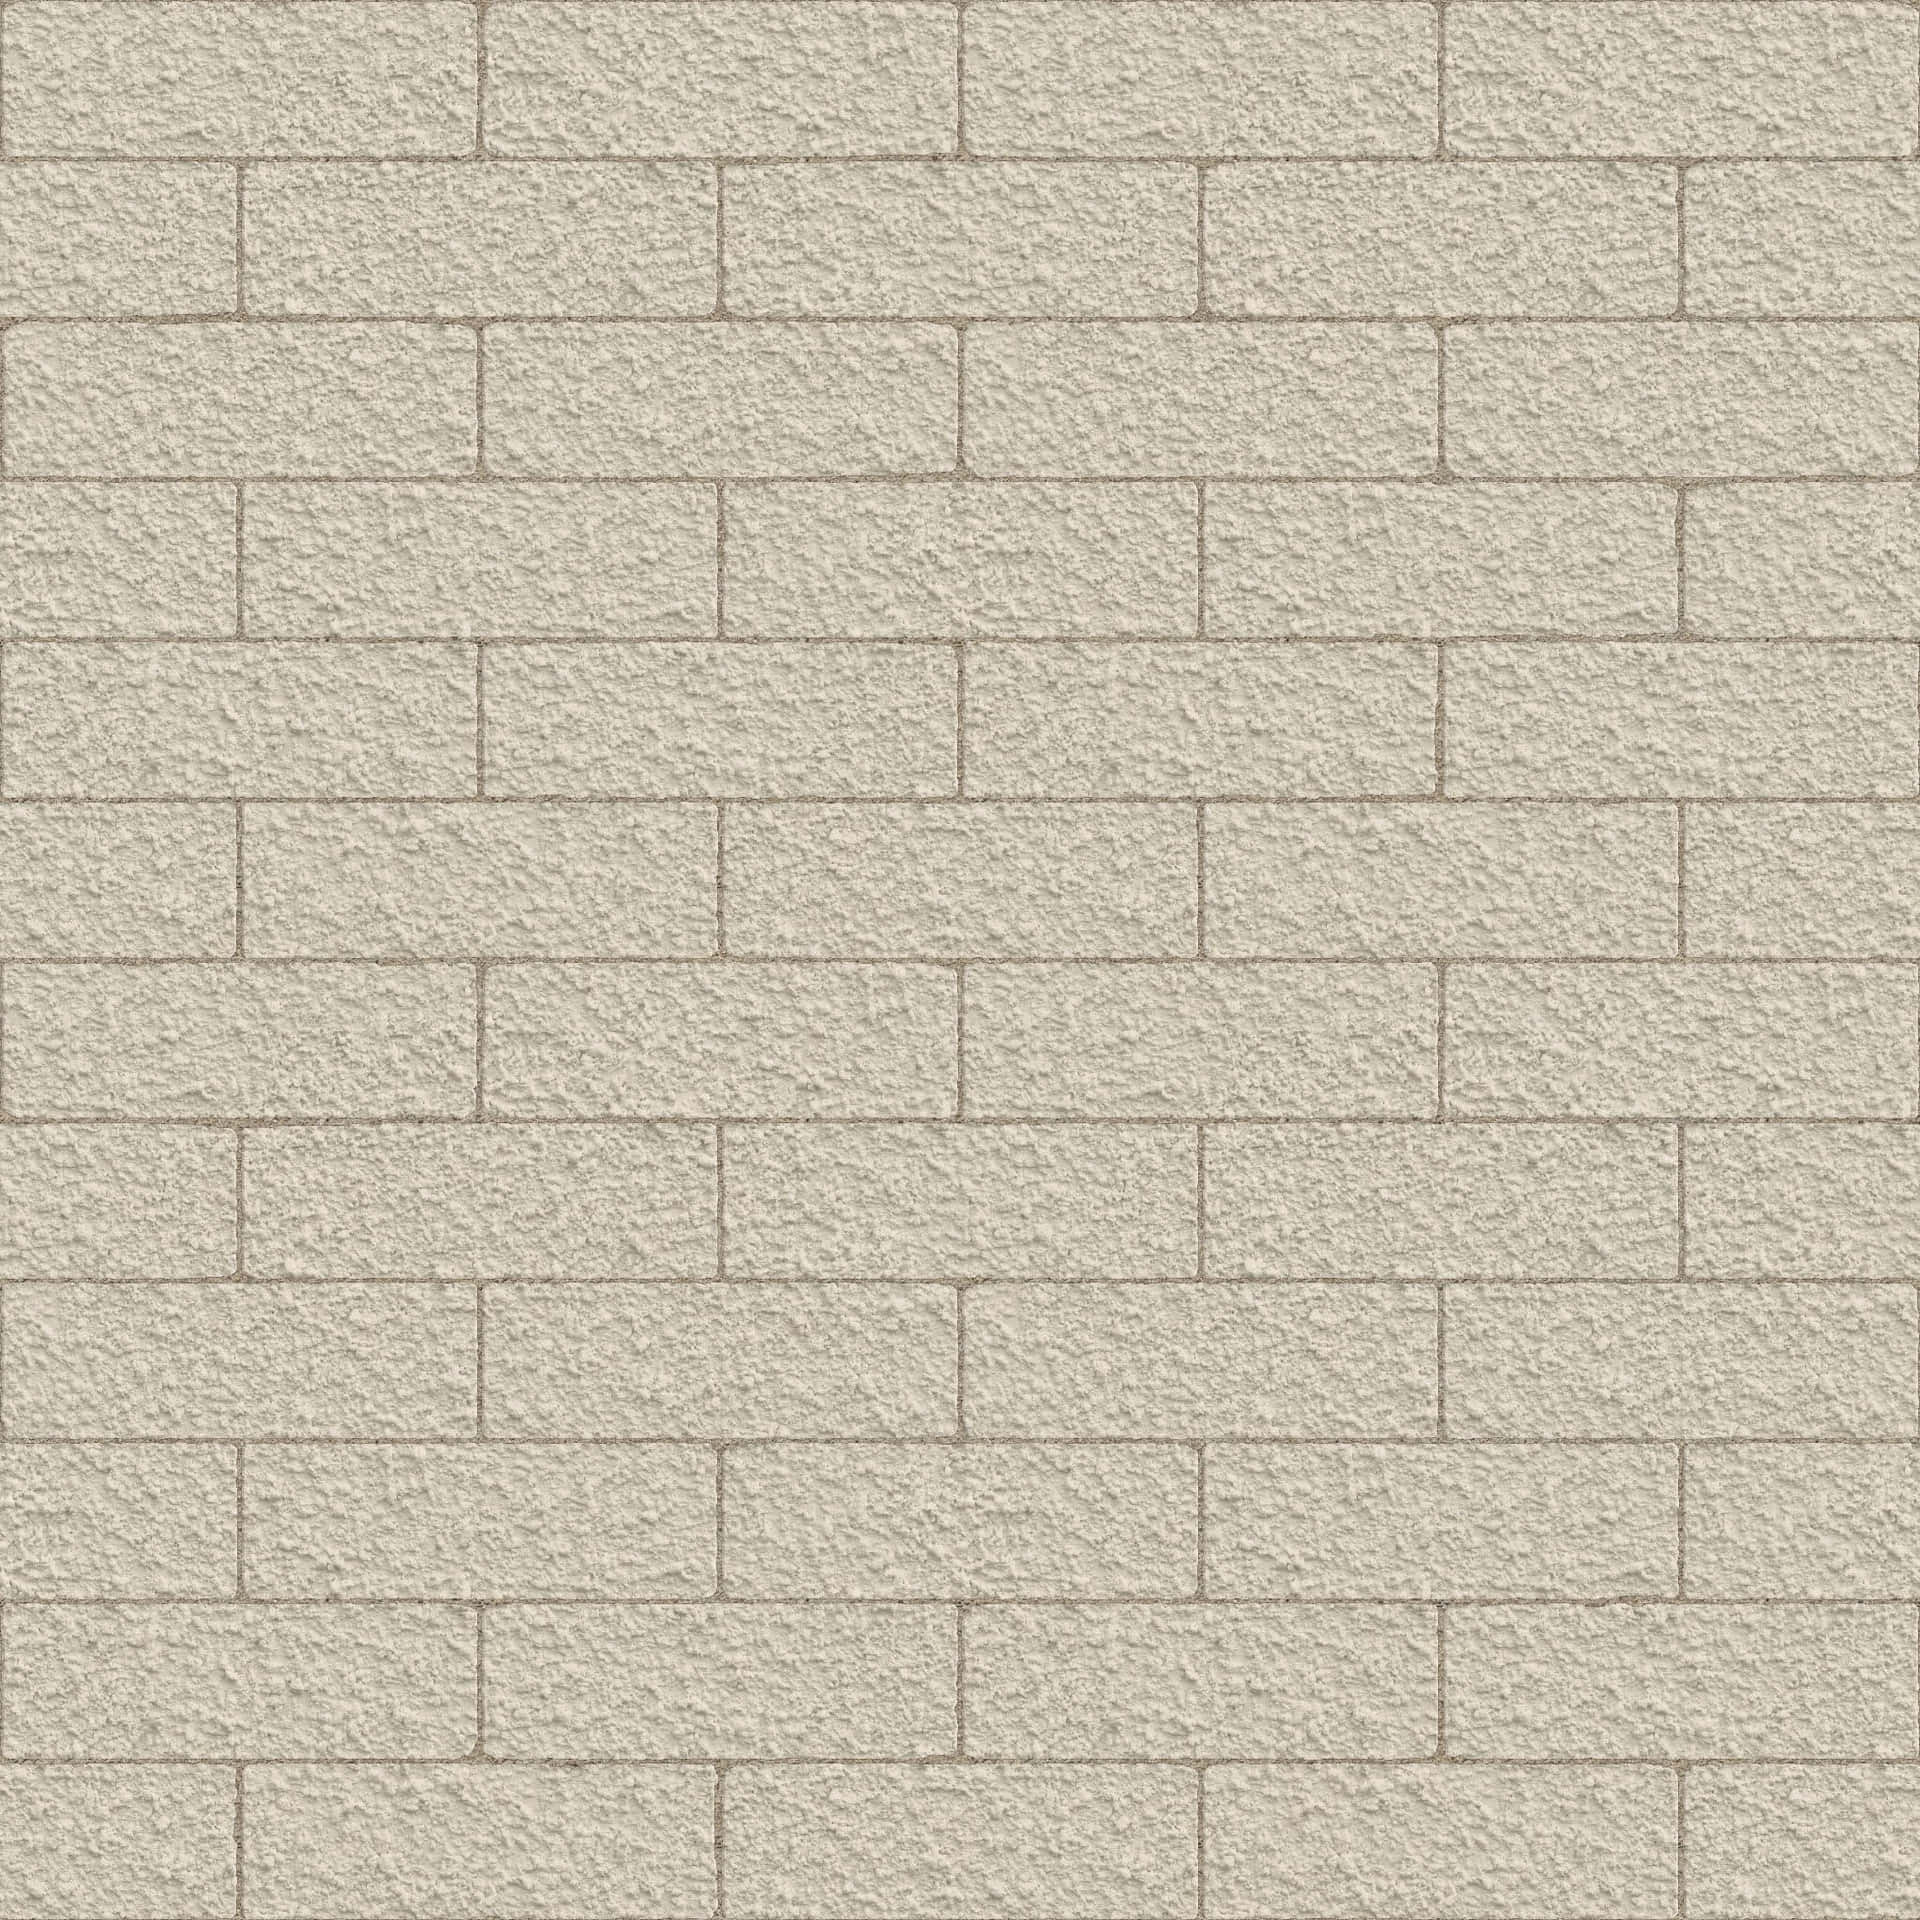 Creamy White Brick Wall Picture